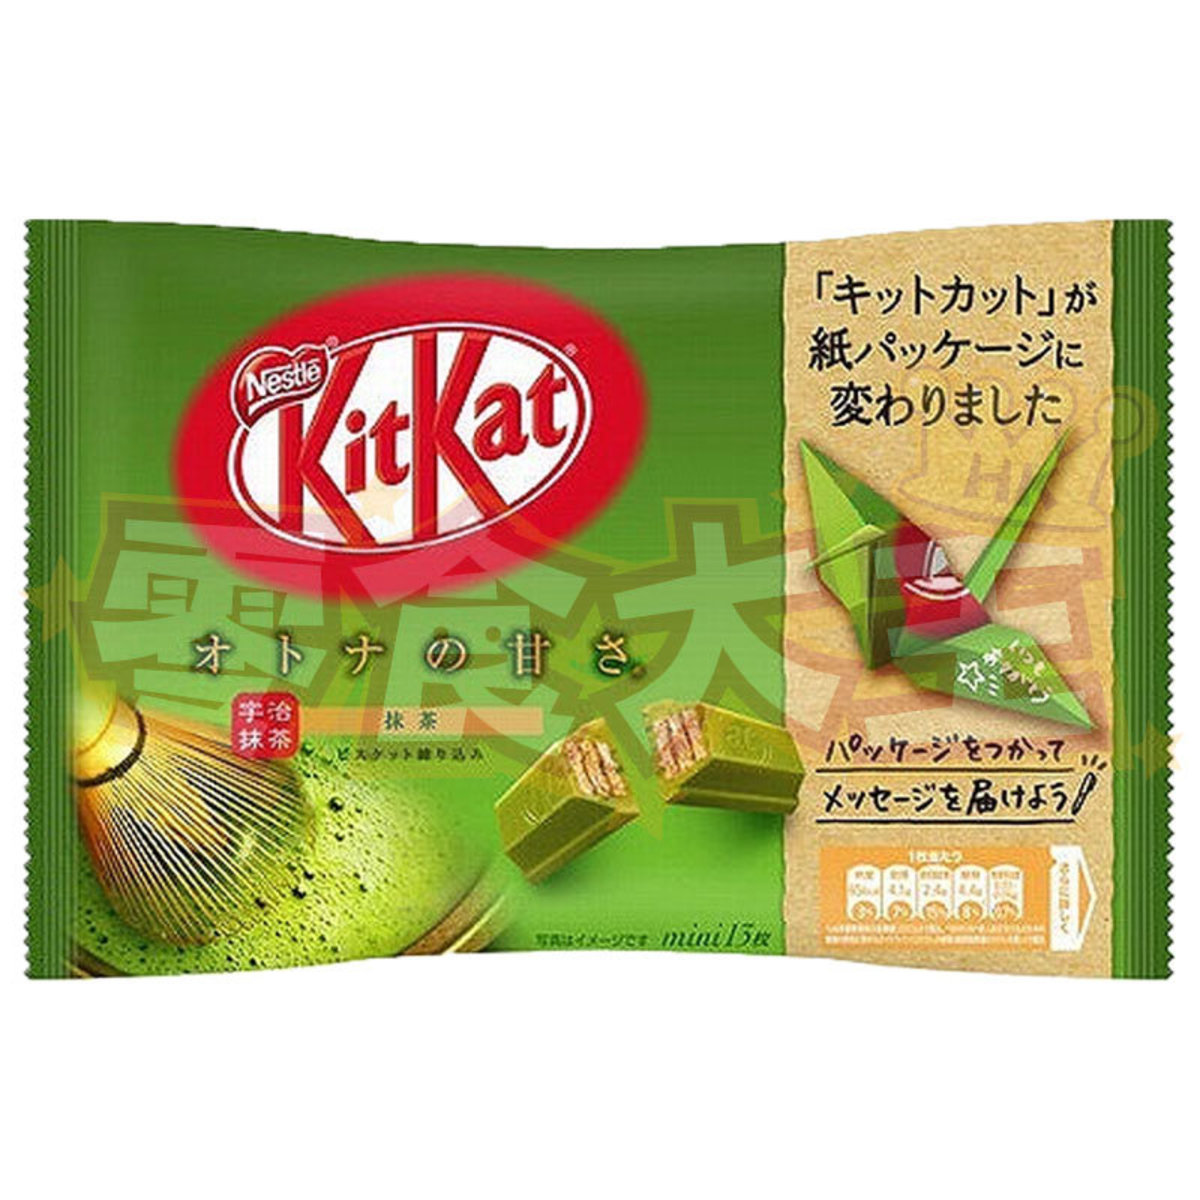 Kẹo sô cô la vị trà xanh - Kitkat Mini Matcha 11 pcs130g